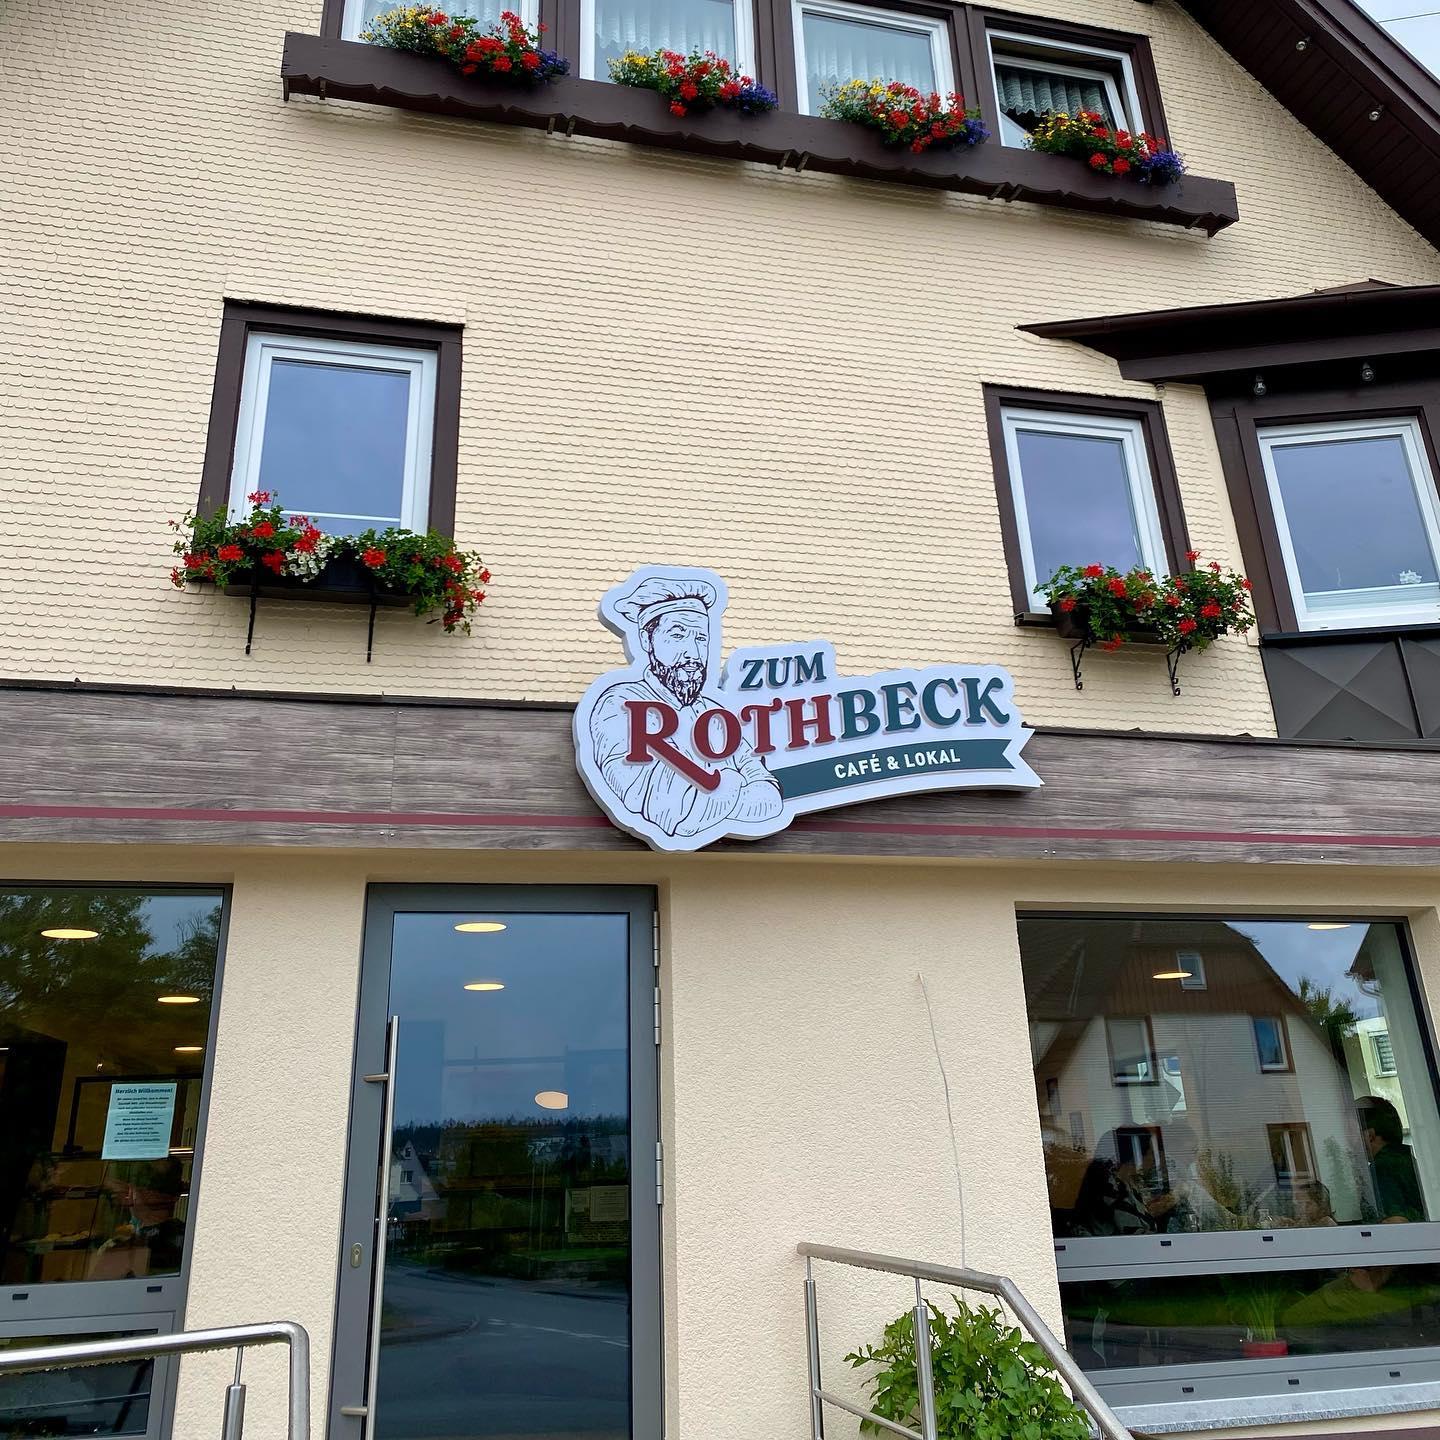 Restaurant "Zum Rothbeck Café und Lokal" in Aichhalden